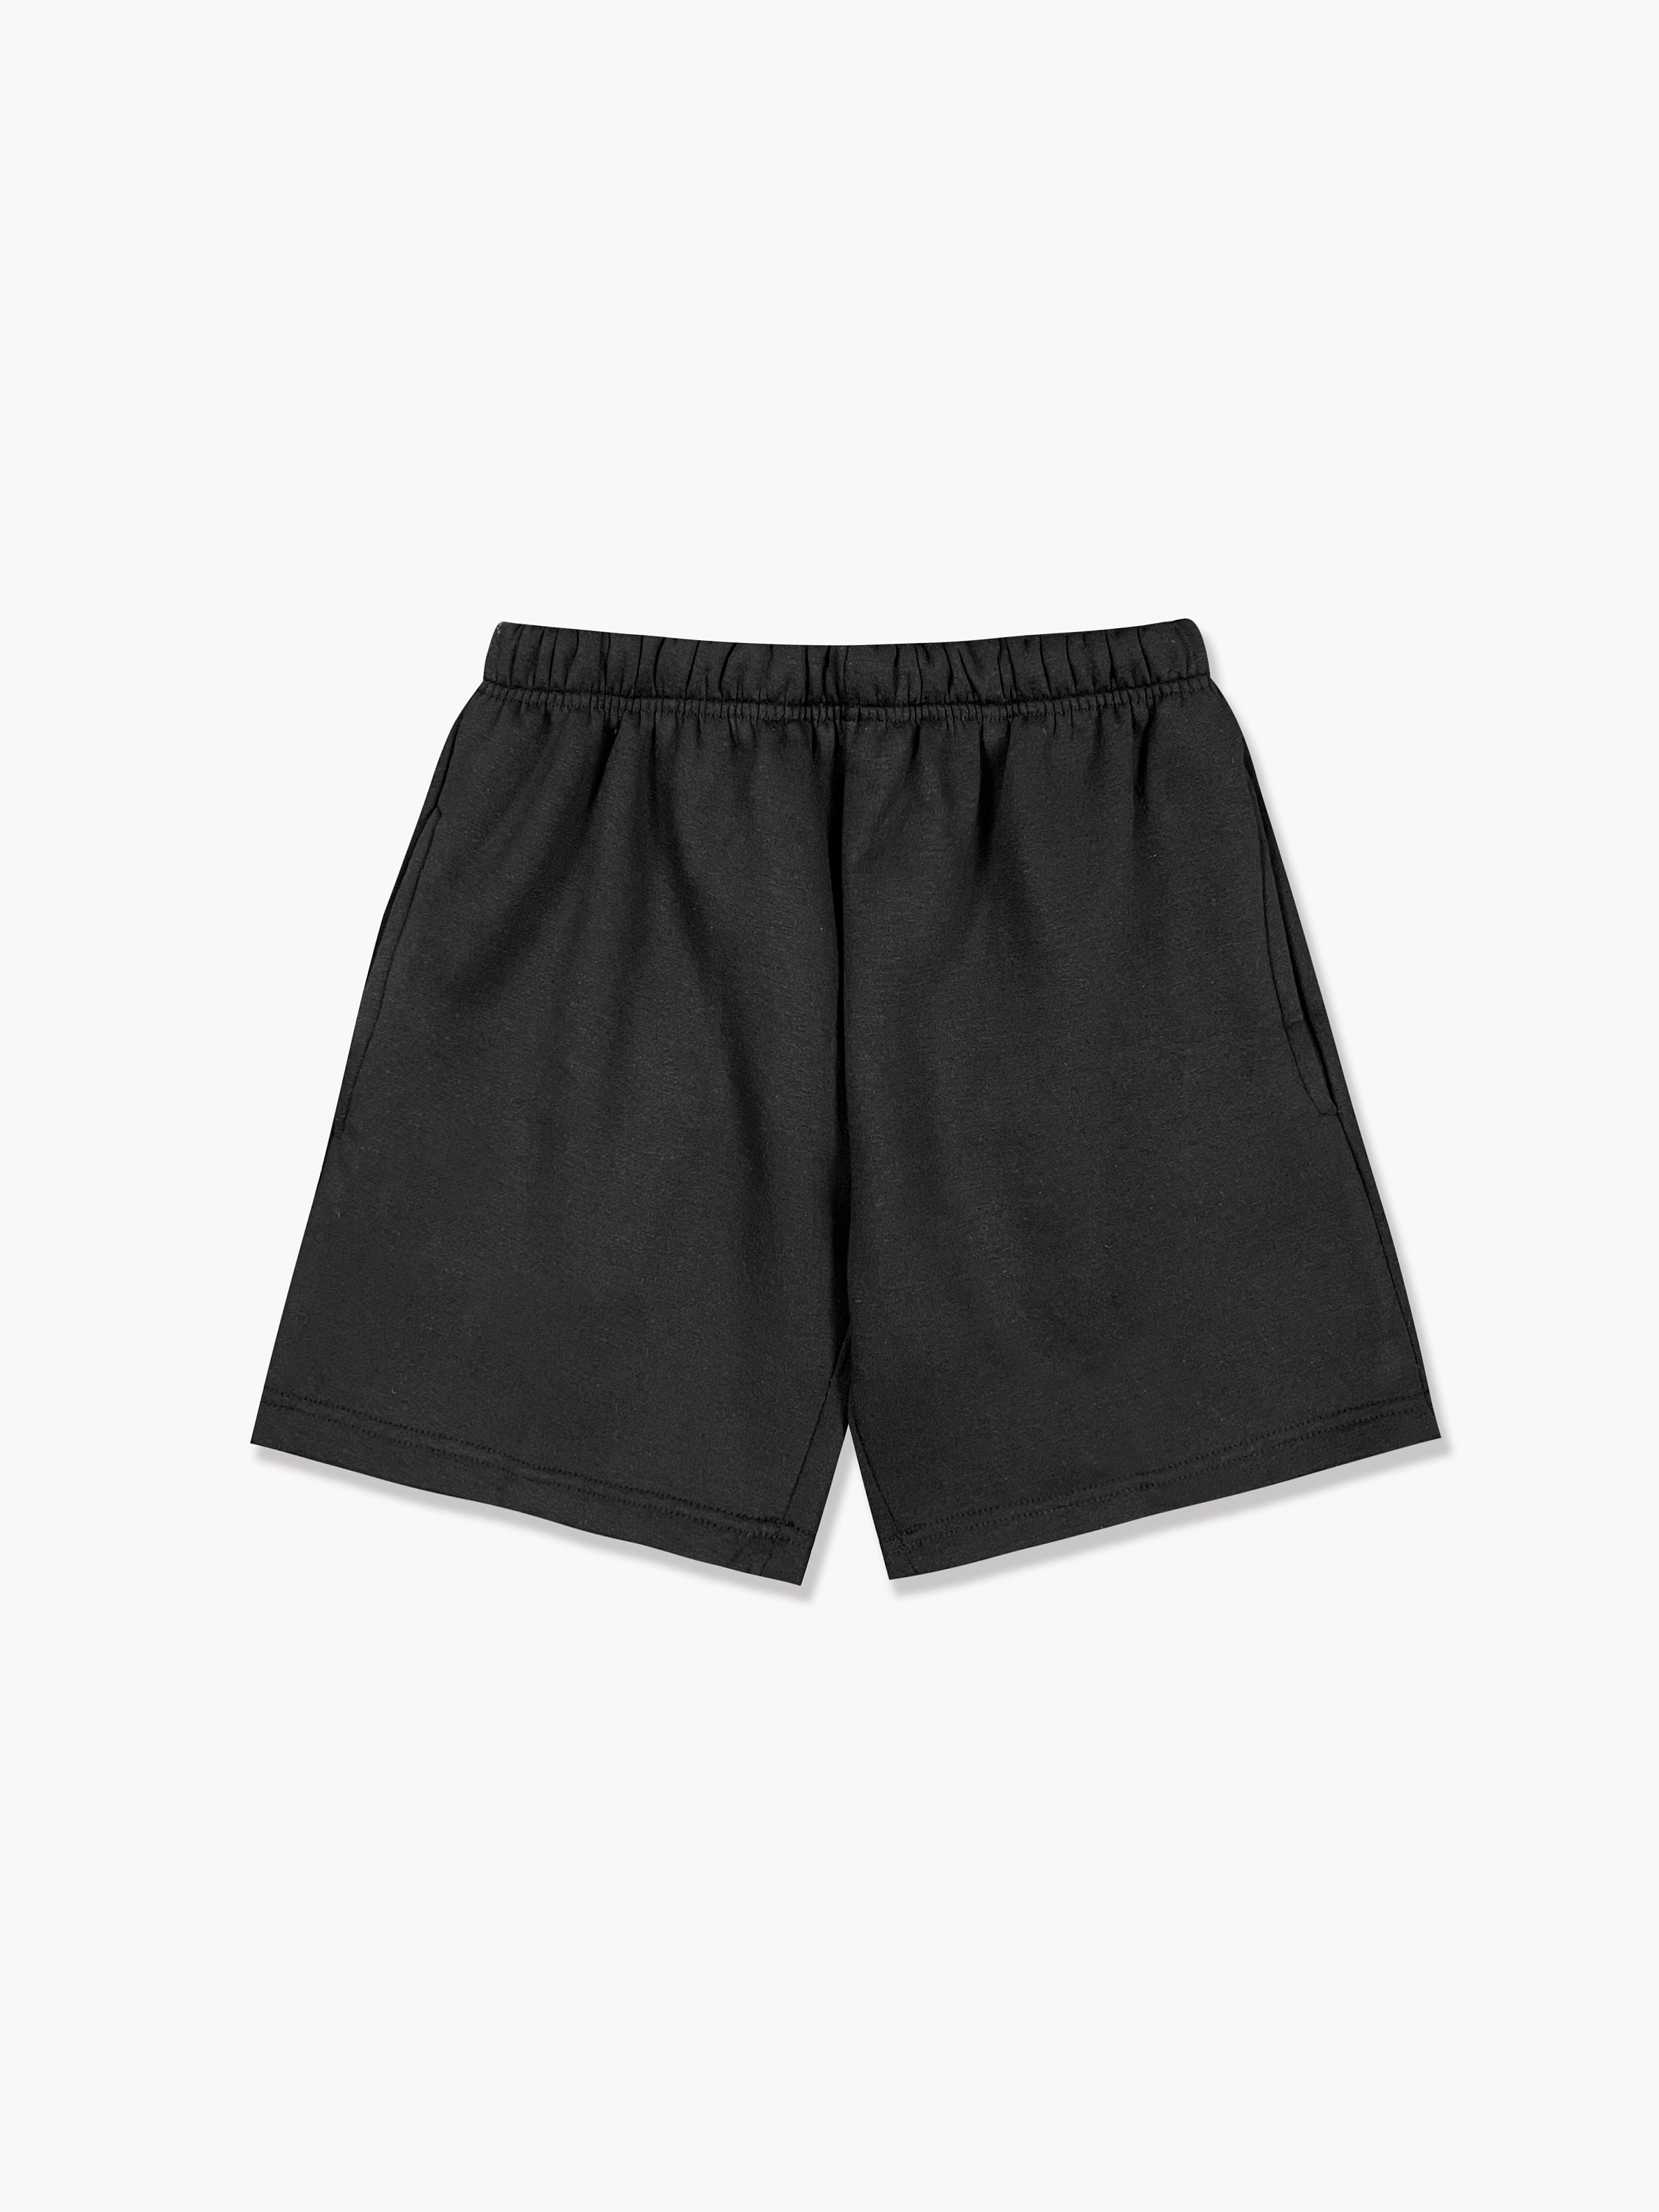 Sweatpant Shorts -  Singapore